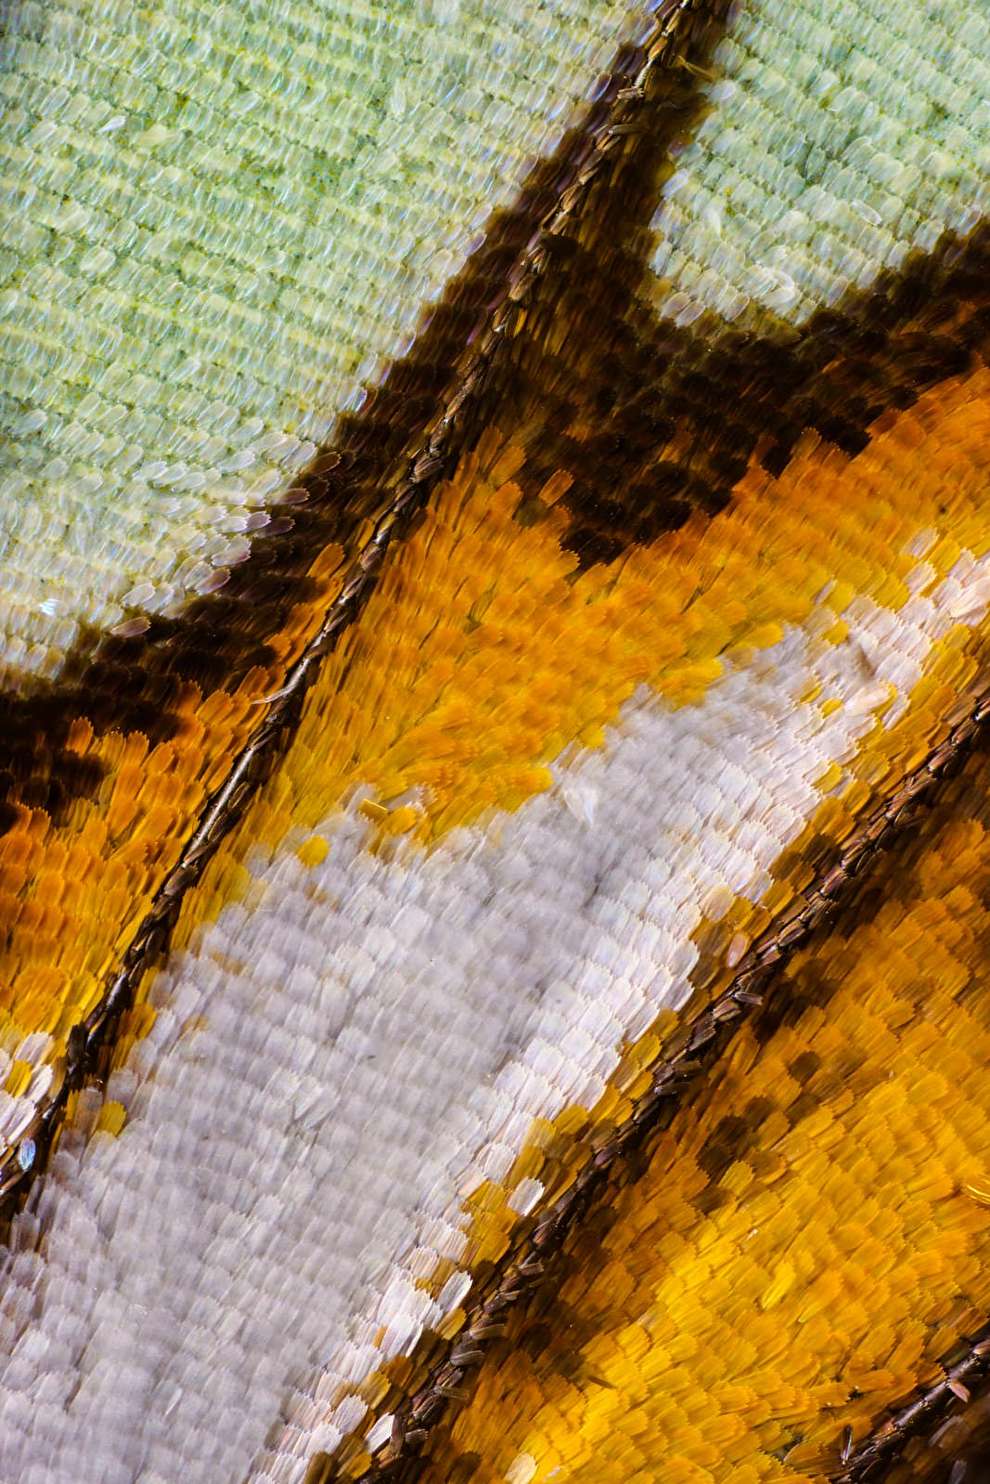 تصاویر دیدنی از بال پروانه به سبک عکاسی ماکرو